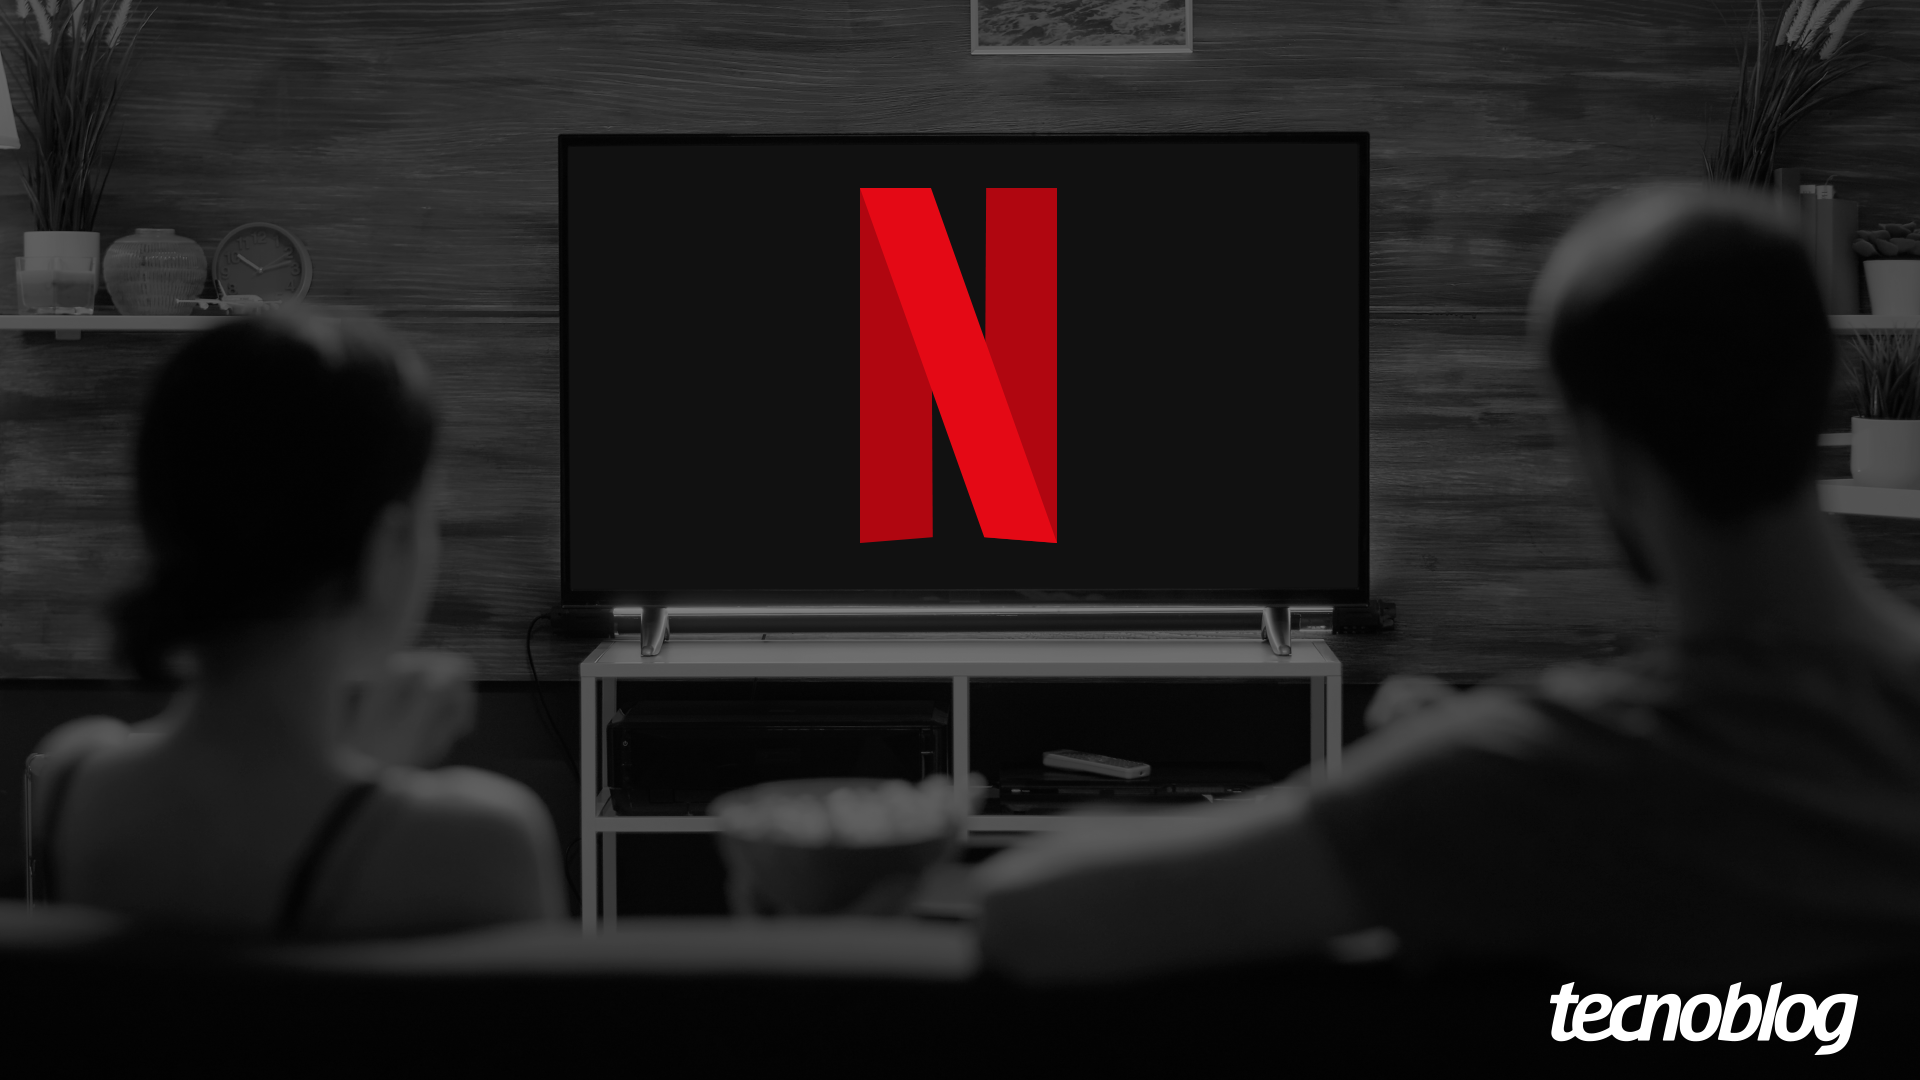 Netflix cancela plano básico a partir da próxima semana -  